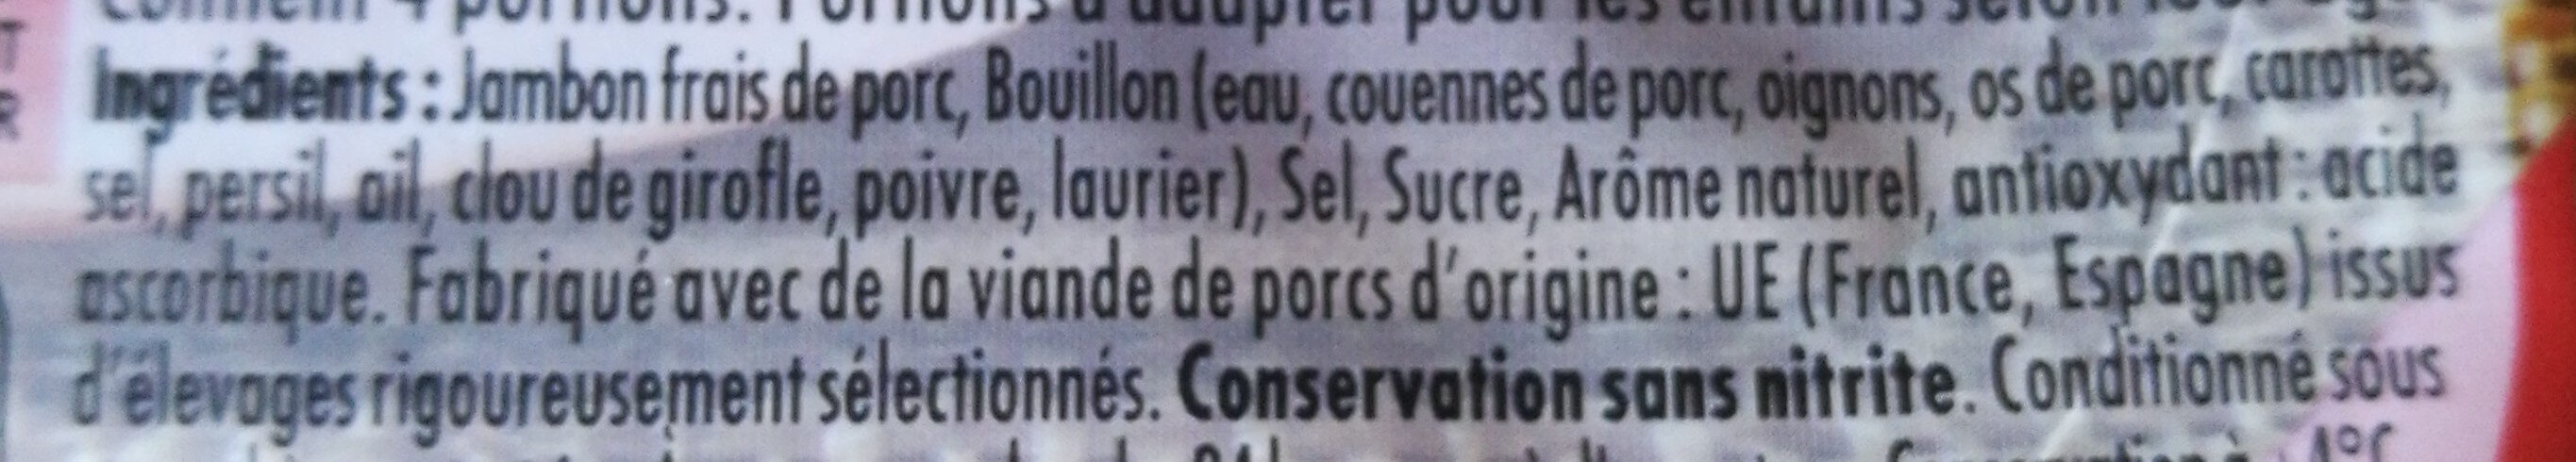 Le Bon Paris Au Torchon conservation Sans Nitrite - Ingredientes - fr